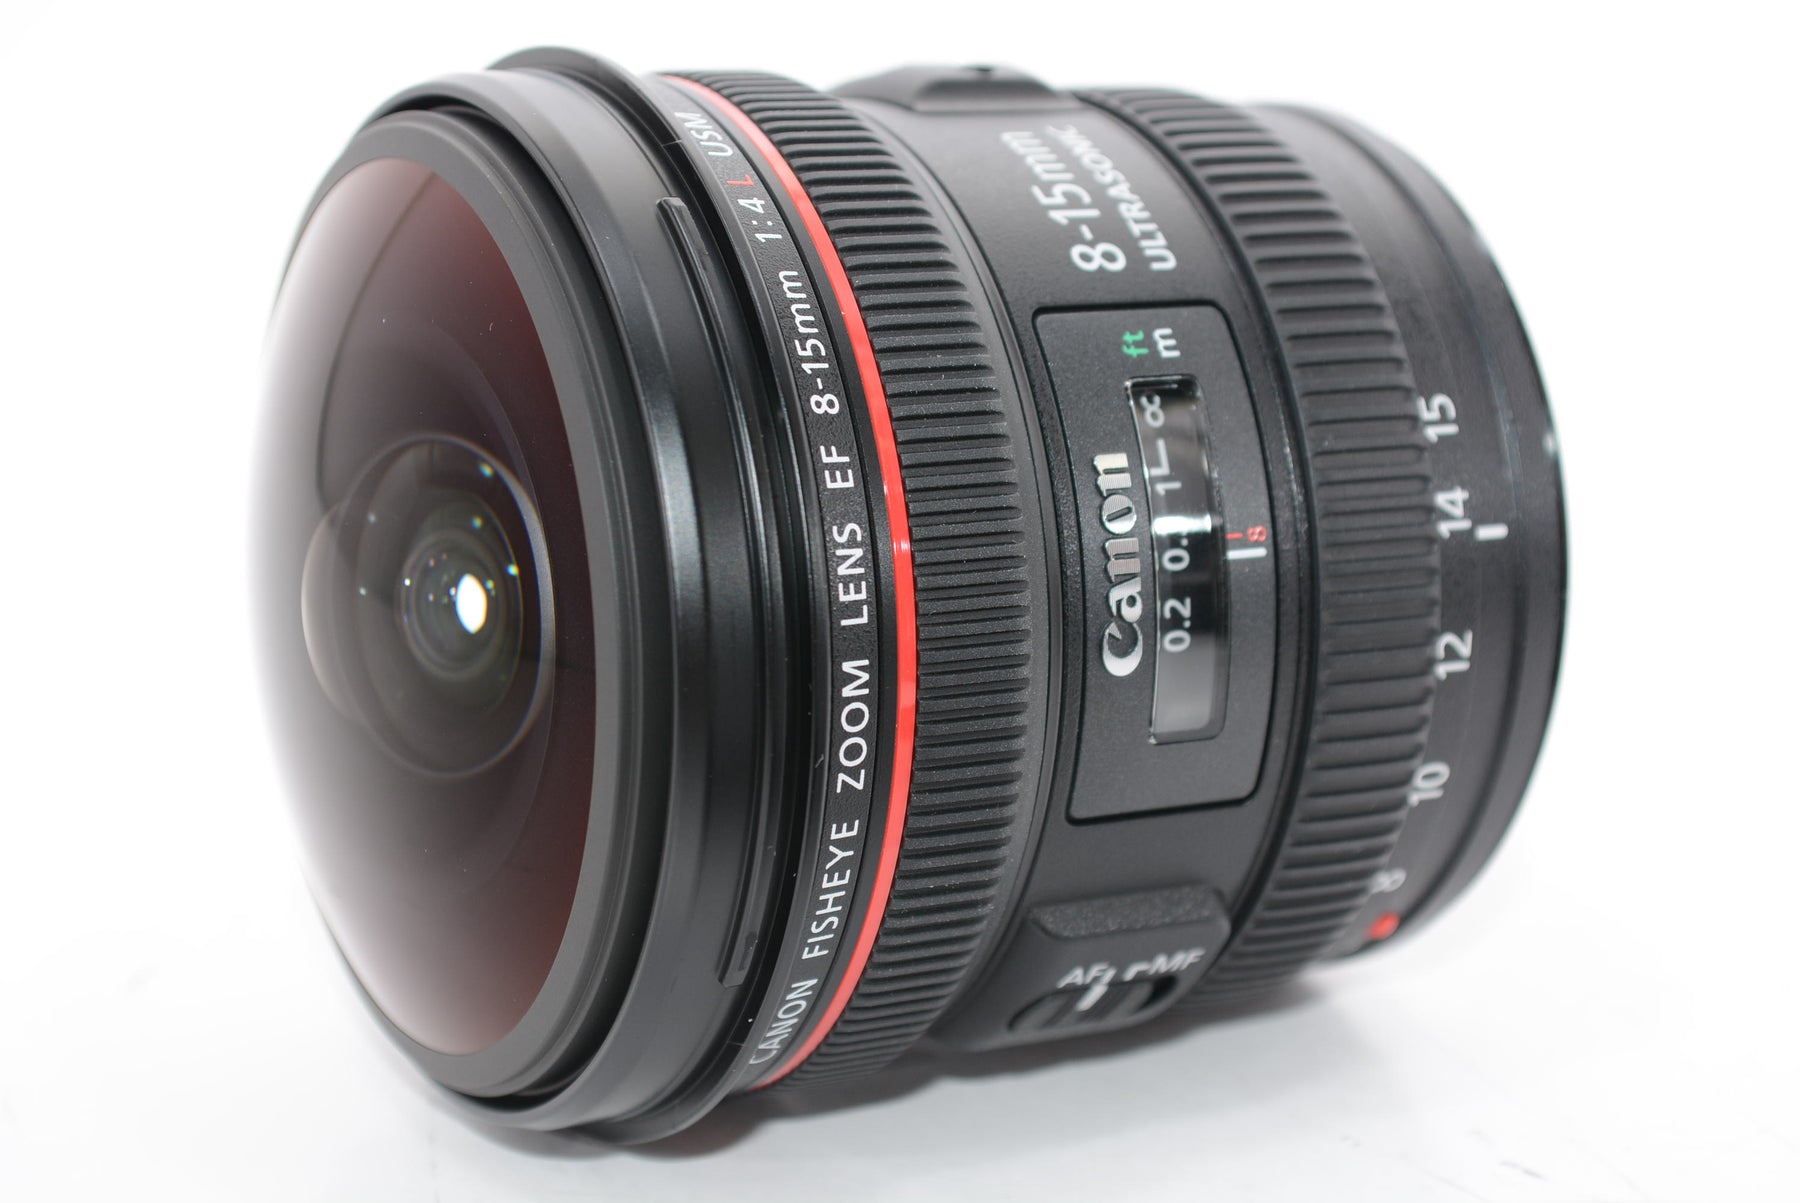 【外観特上級】Canon 超広角ズームレンズ EF8-15mm F4L フィッシュアイ USM フルサイズ対応